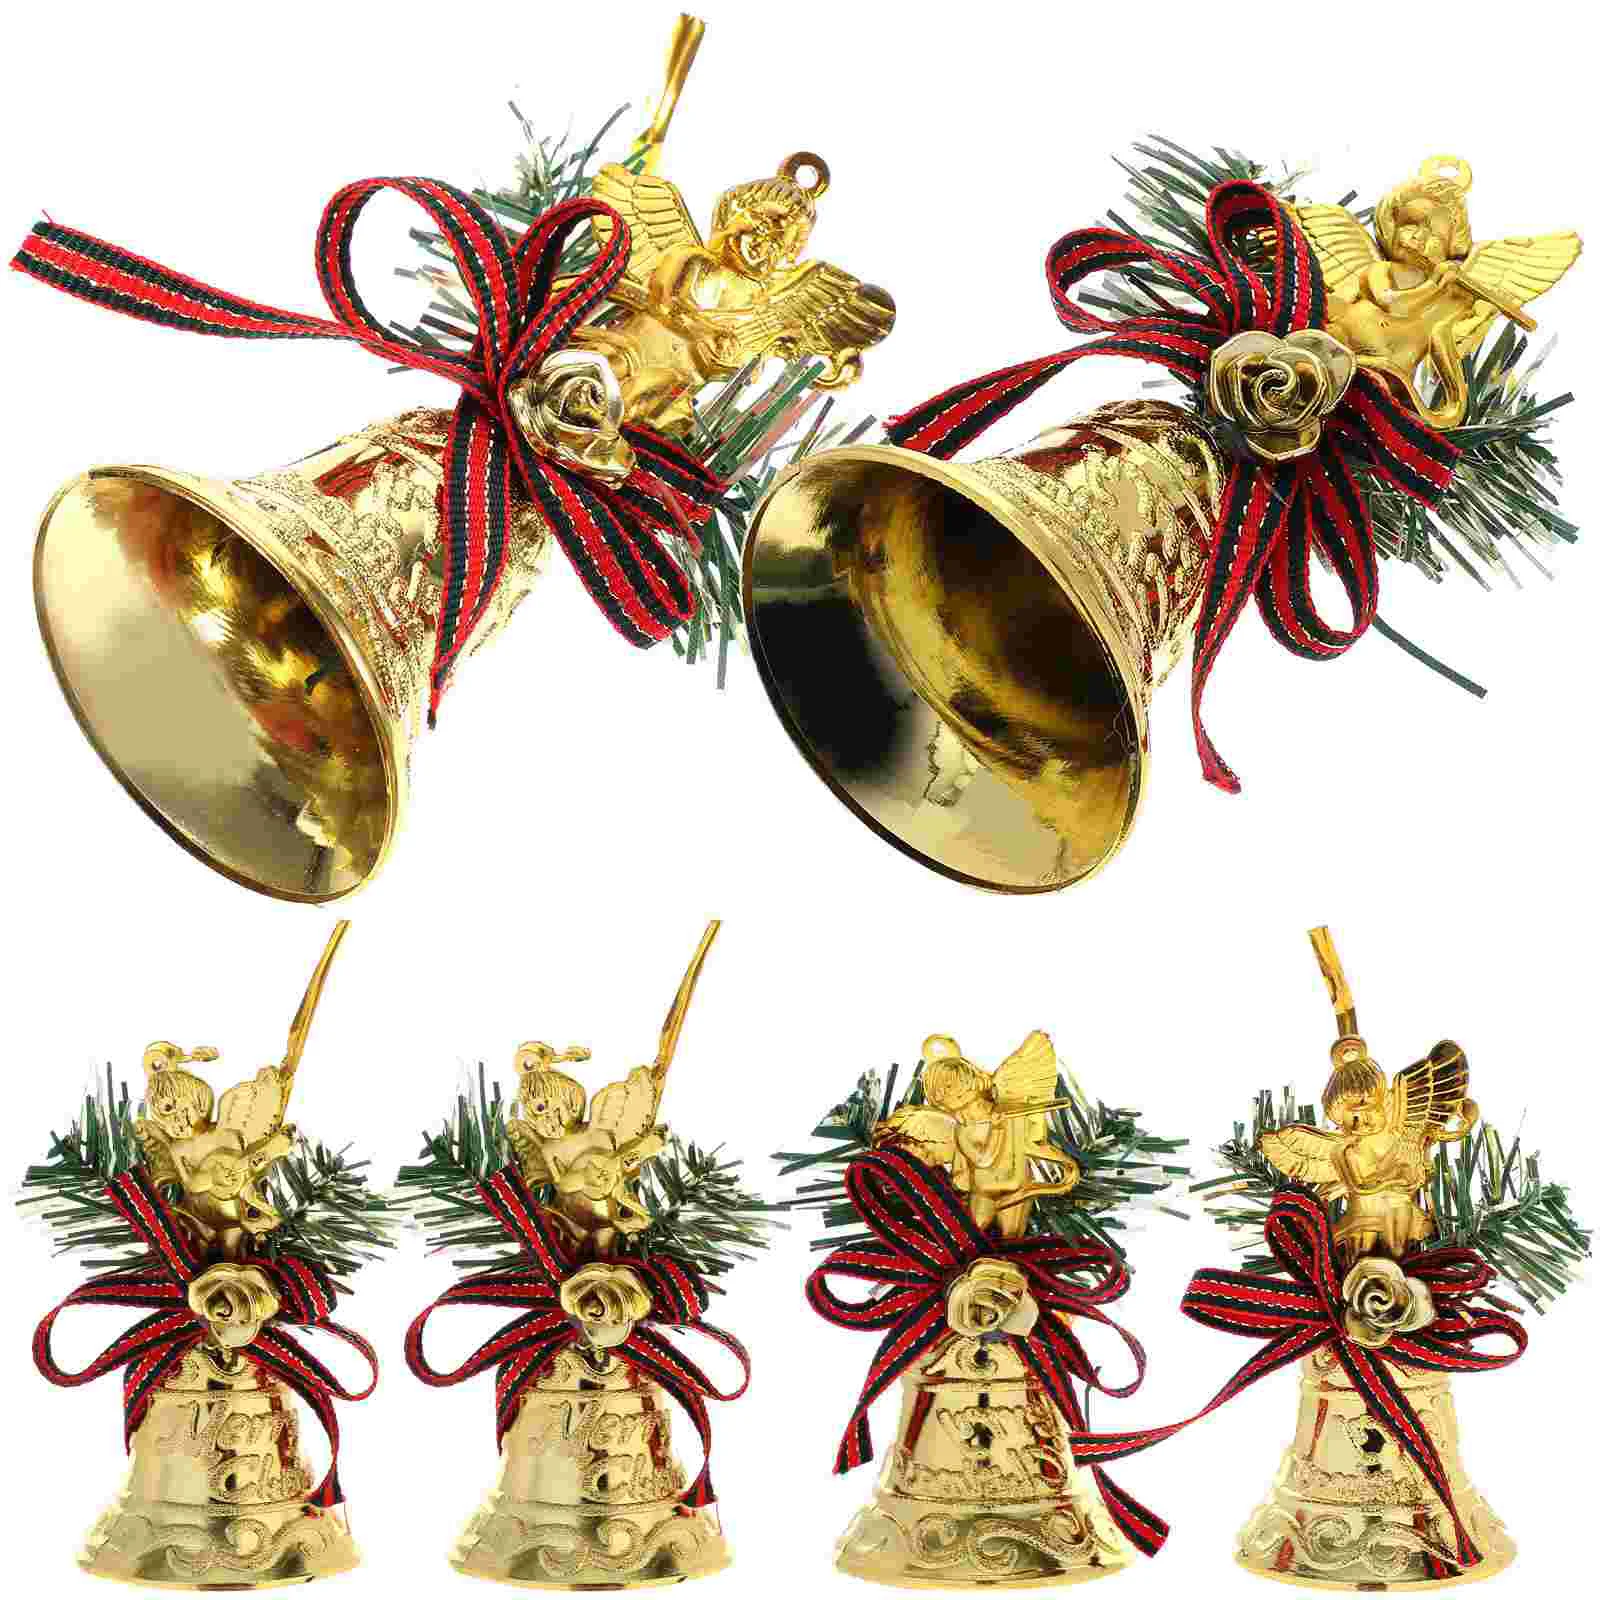 

6 Pcs Christmas Bell Pendant Tree Hanging Ornament Decor Decorations Pendent Bells Xmas Plastic Ornaments